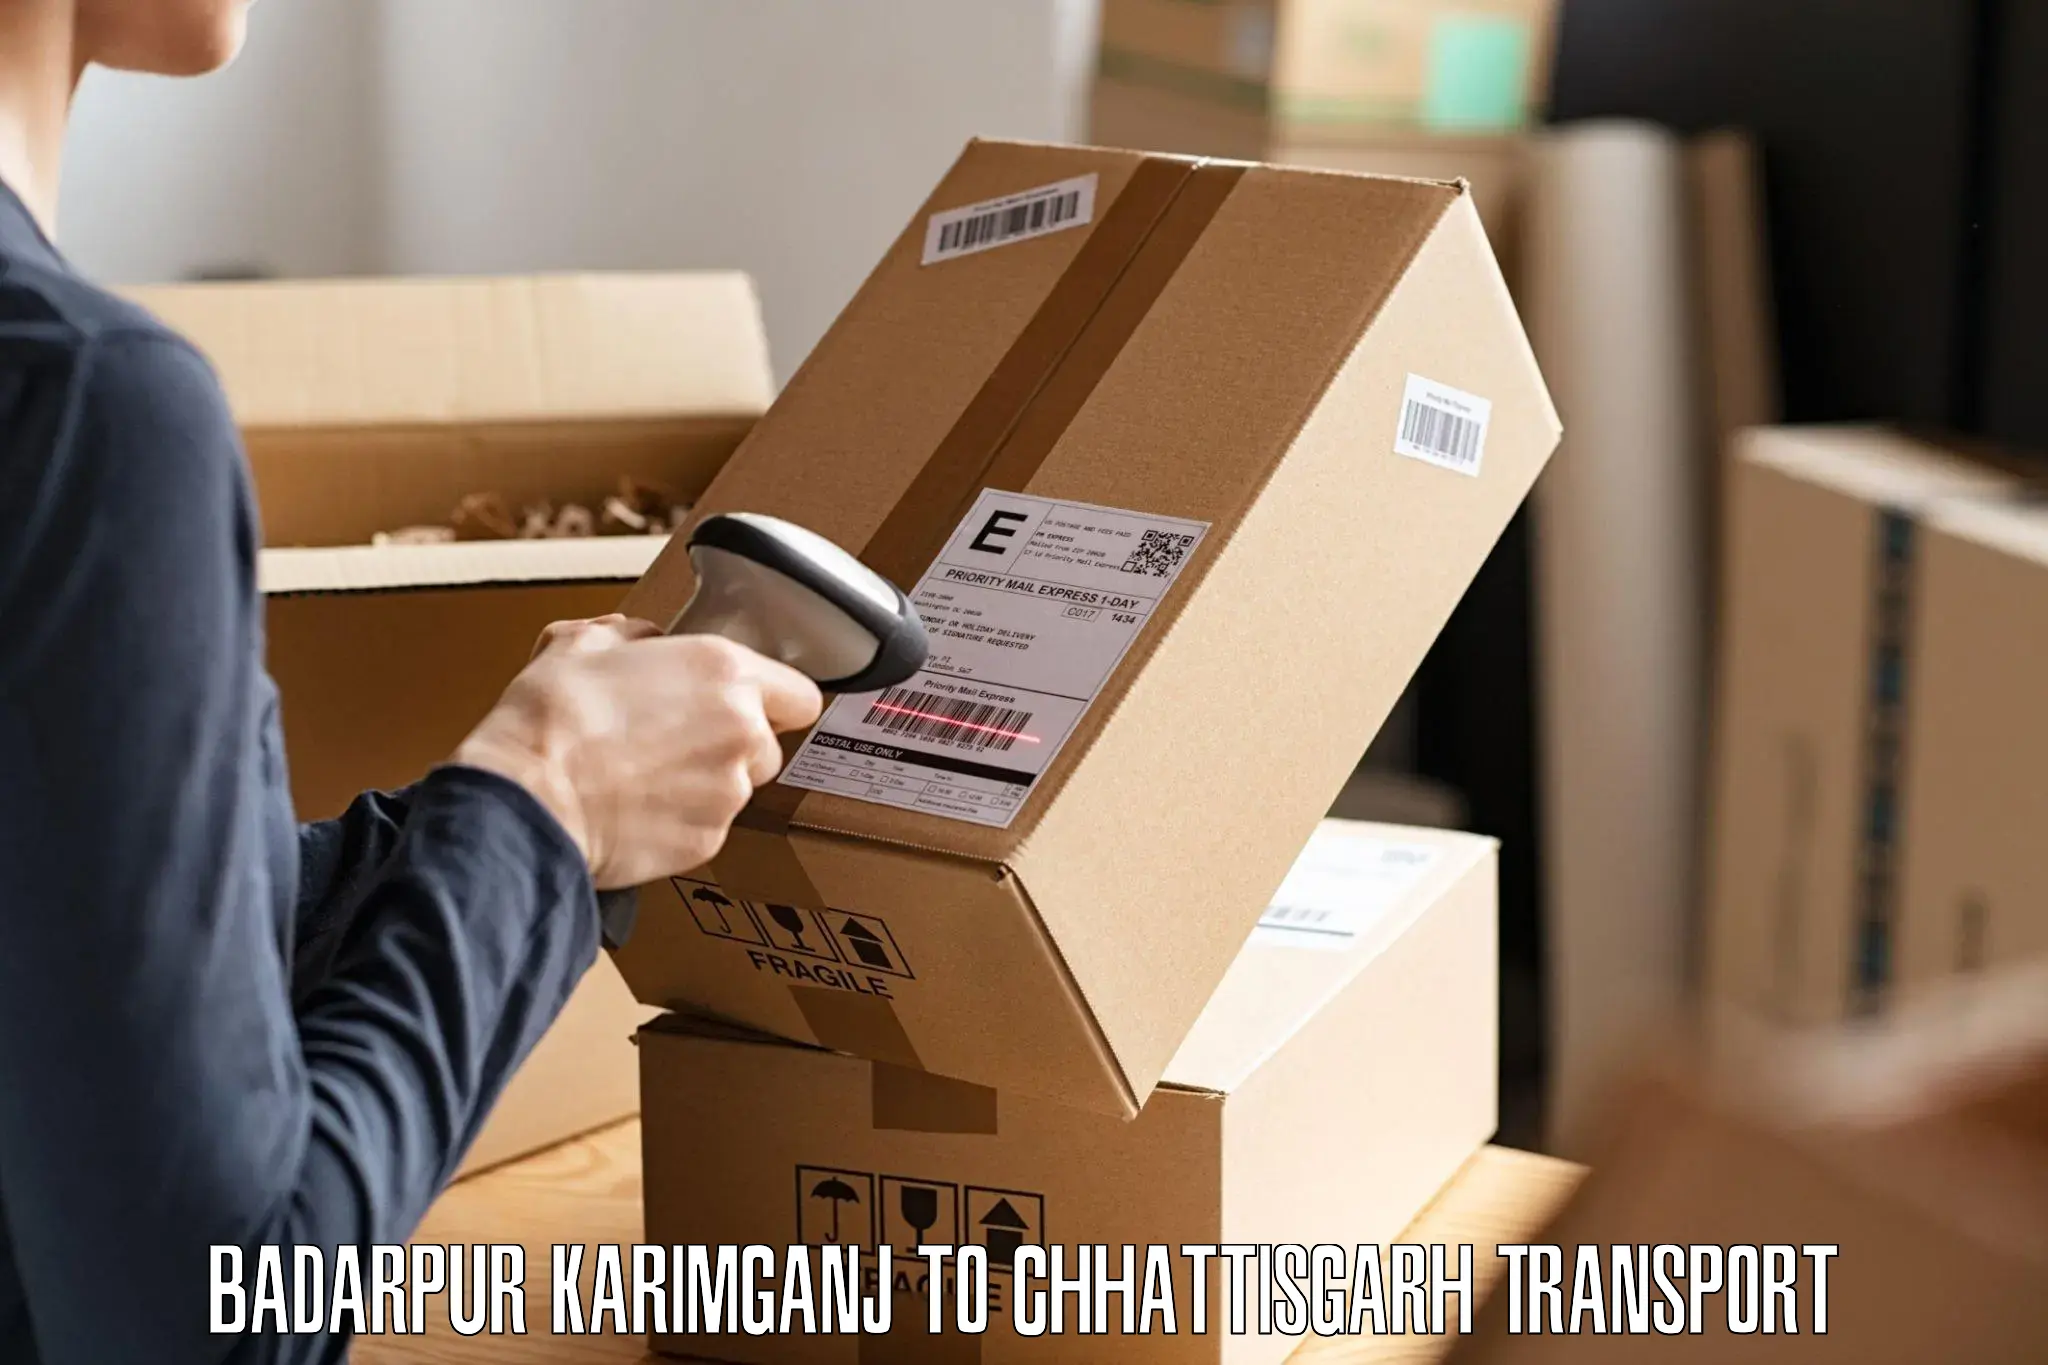 Daily parcel service transport Badarpur Karimganj to Bhatapara